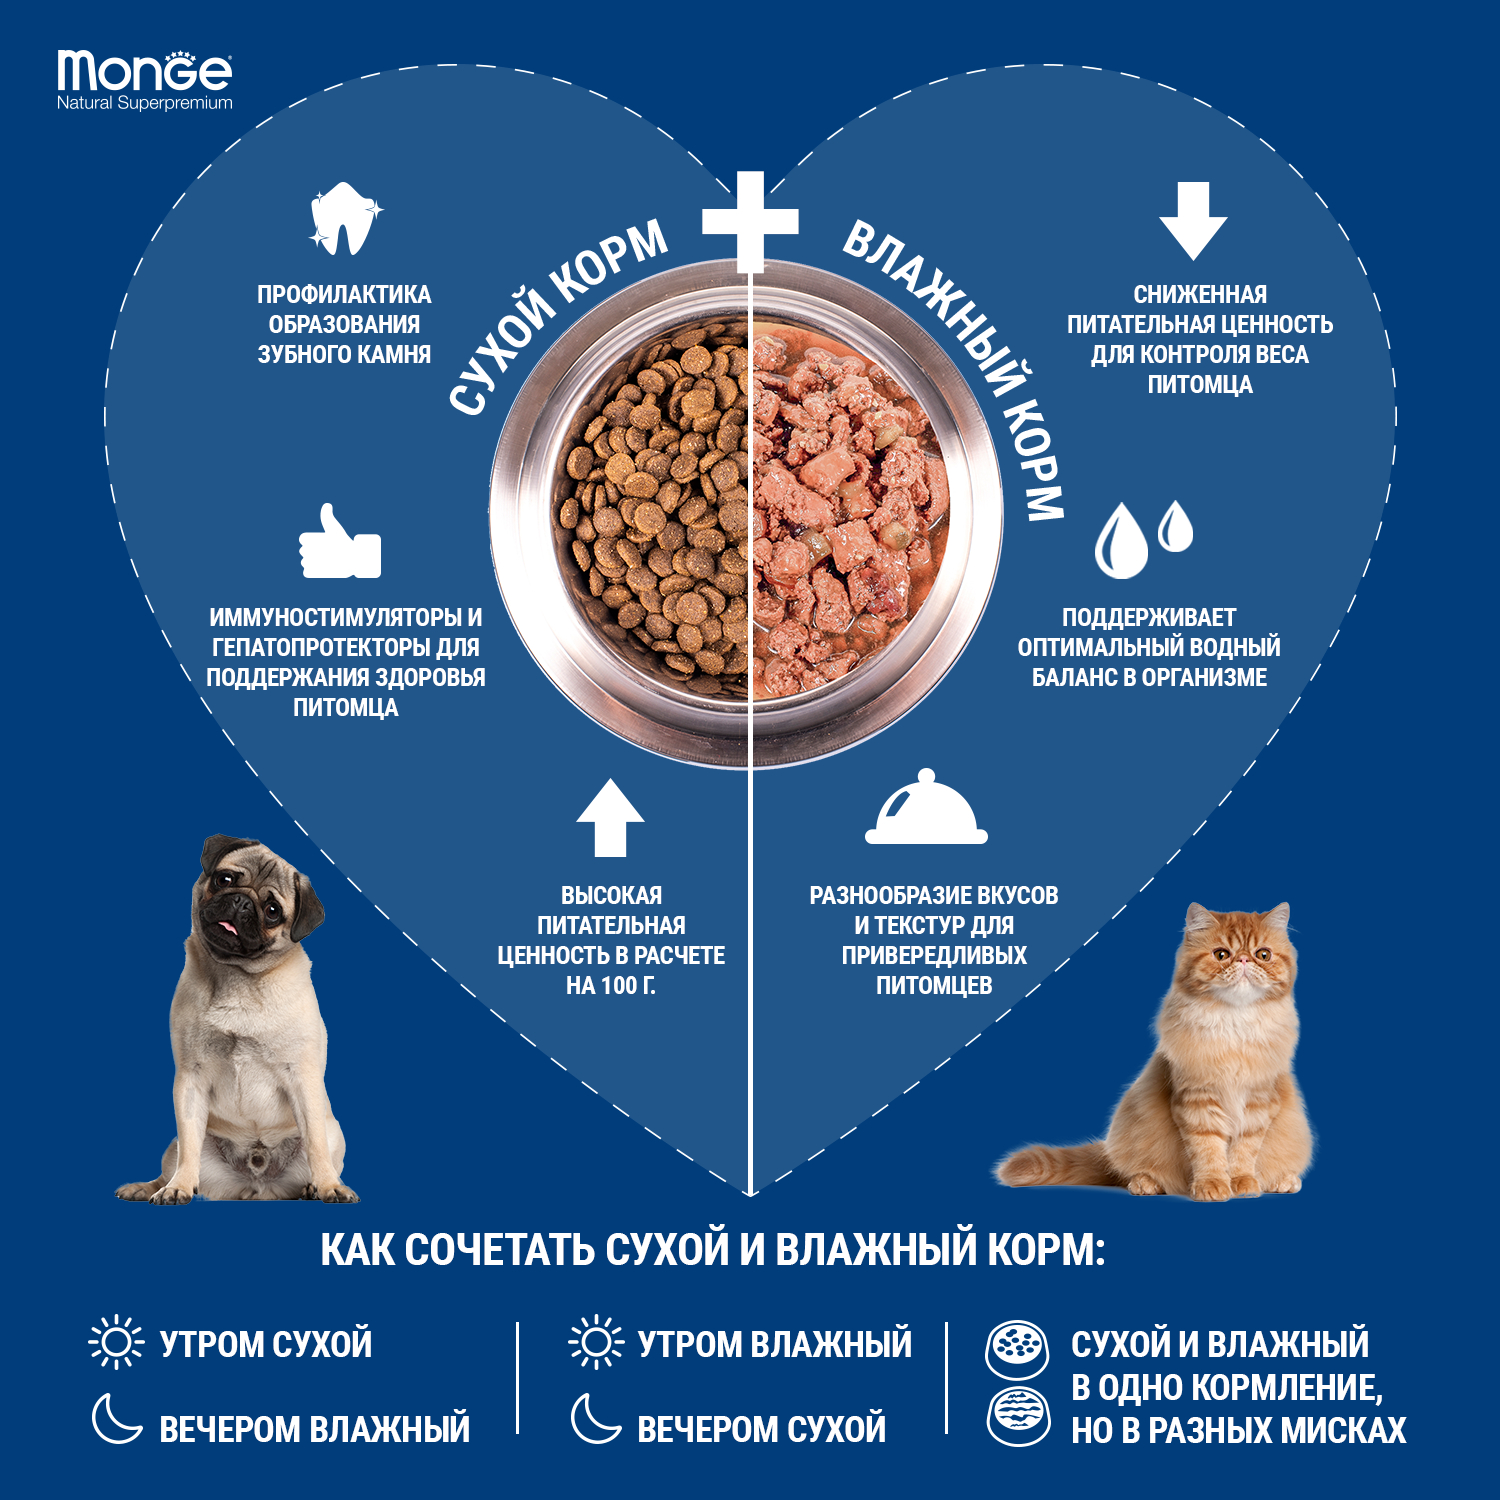 Monge Cat Urinary корм для кошек профилактика МКБ 1,5 кг